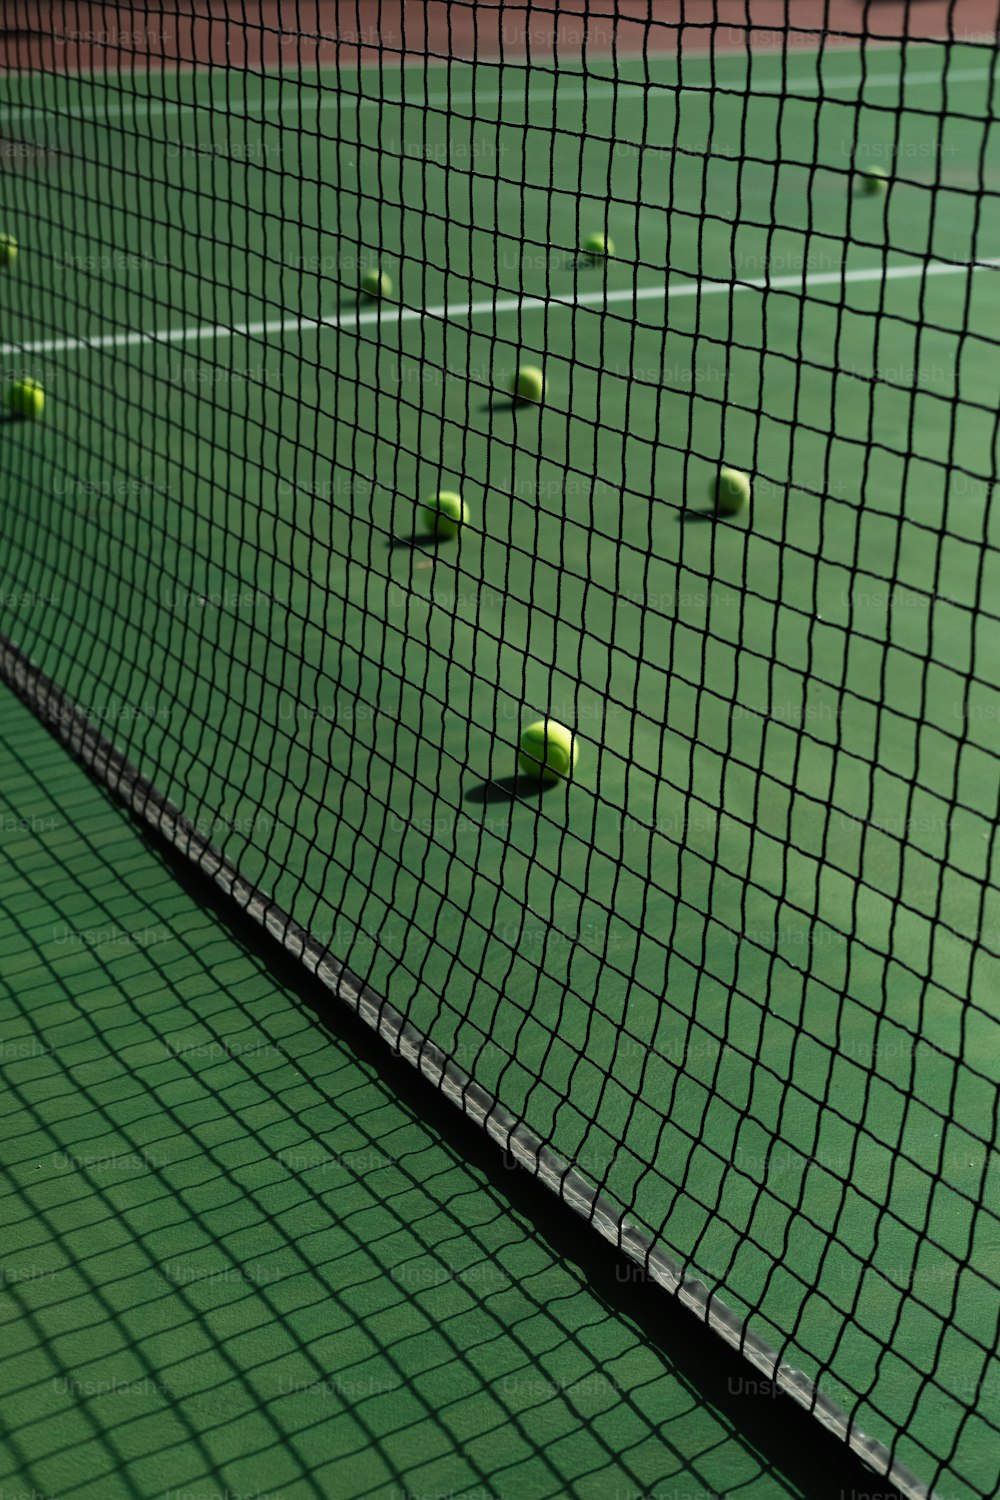 テニスボールが数個あるテニスコート